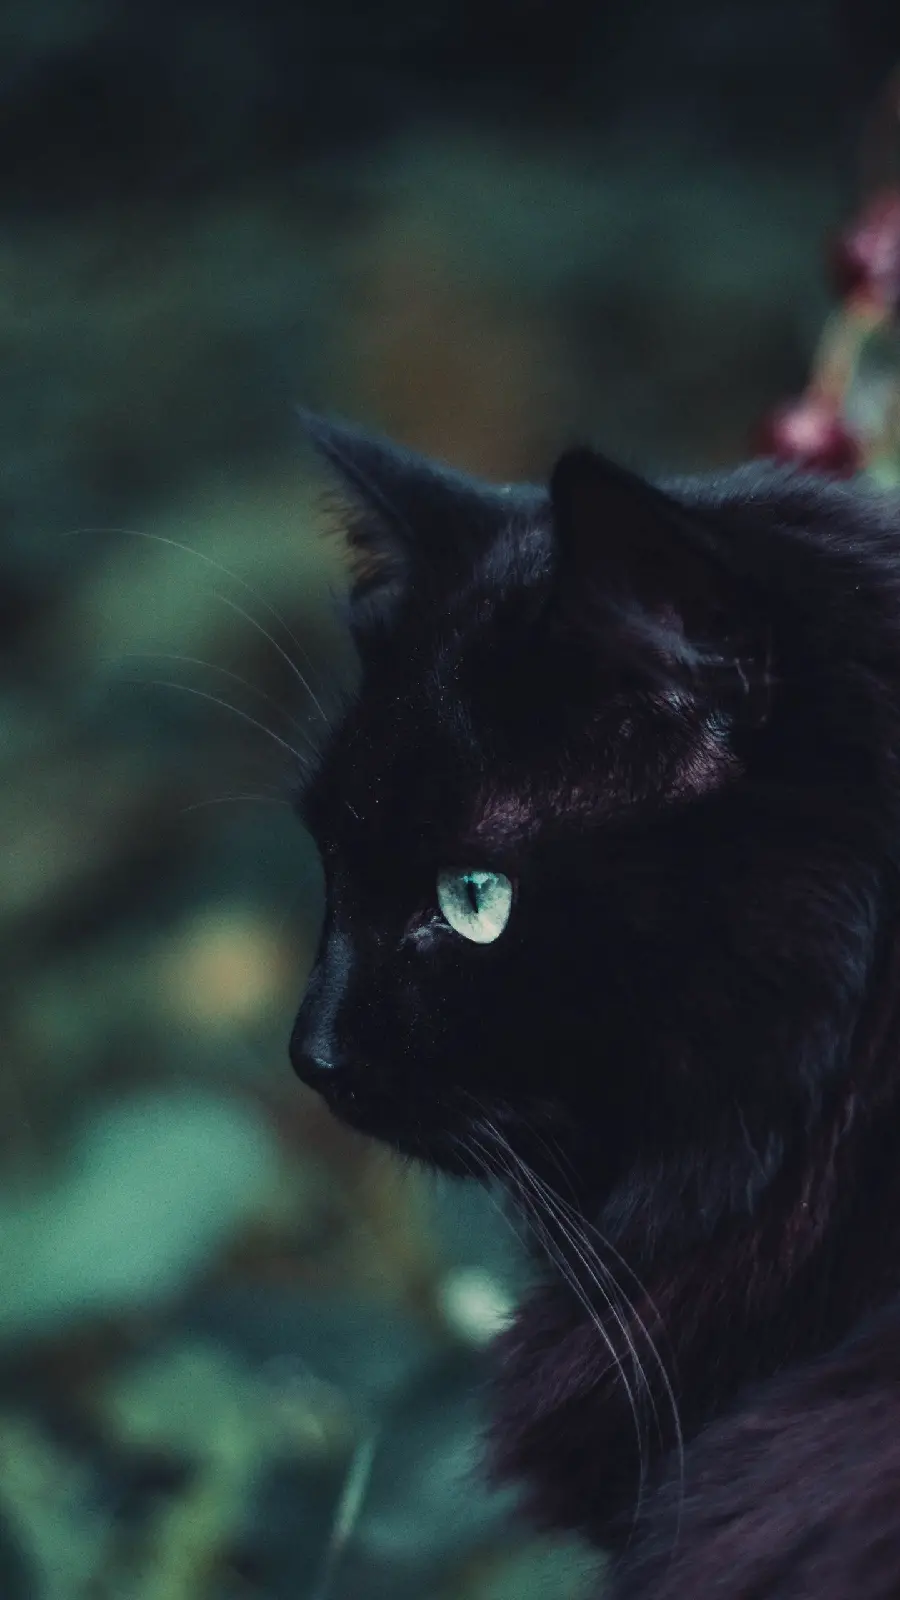 دانلود عکس گربه مشکی با چشم های سبز